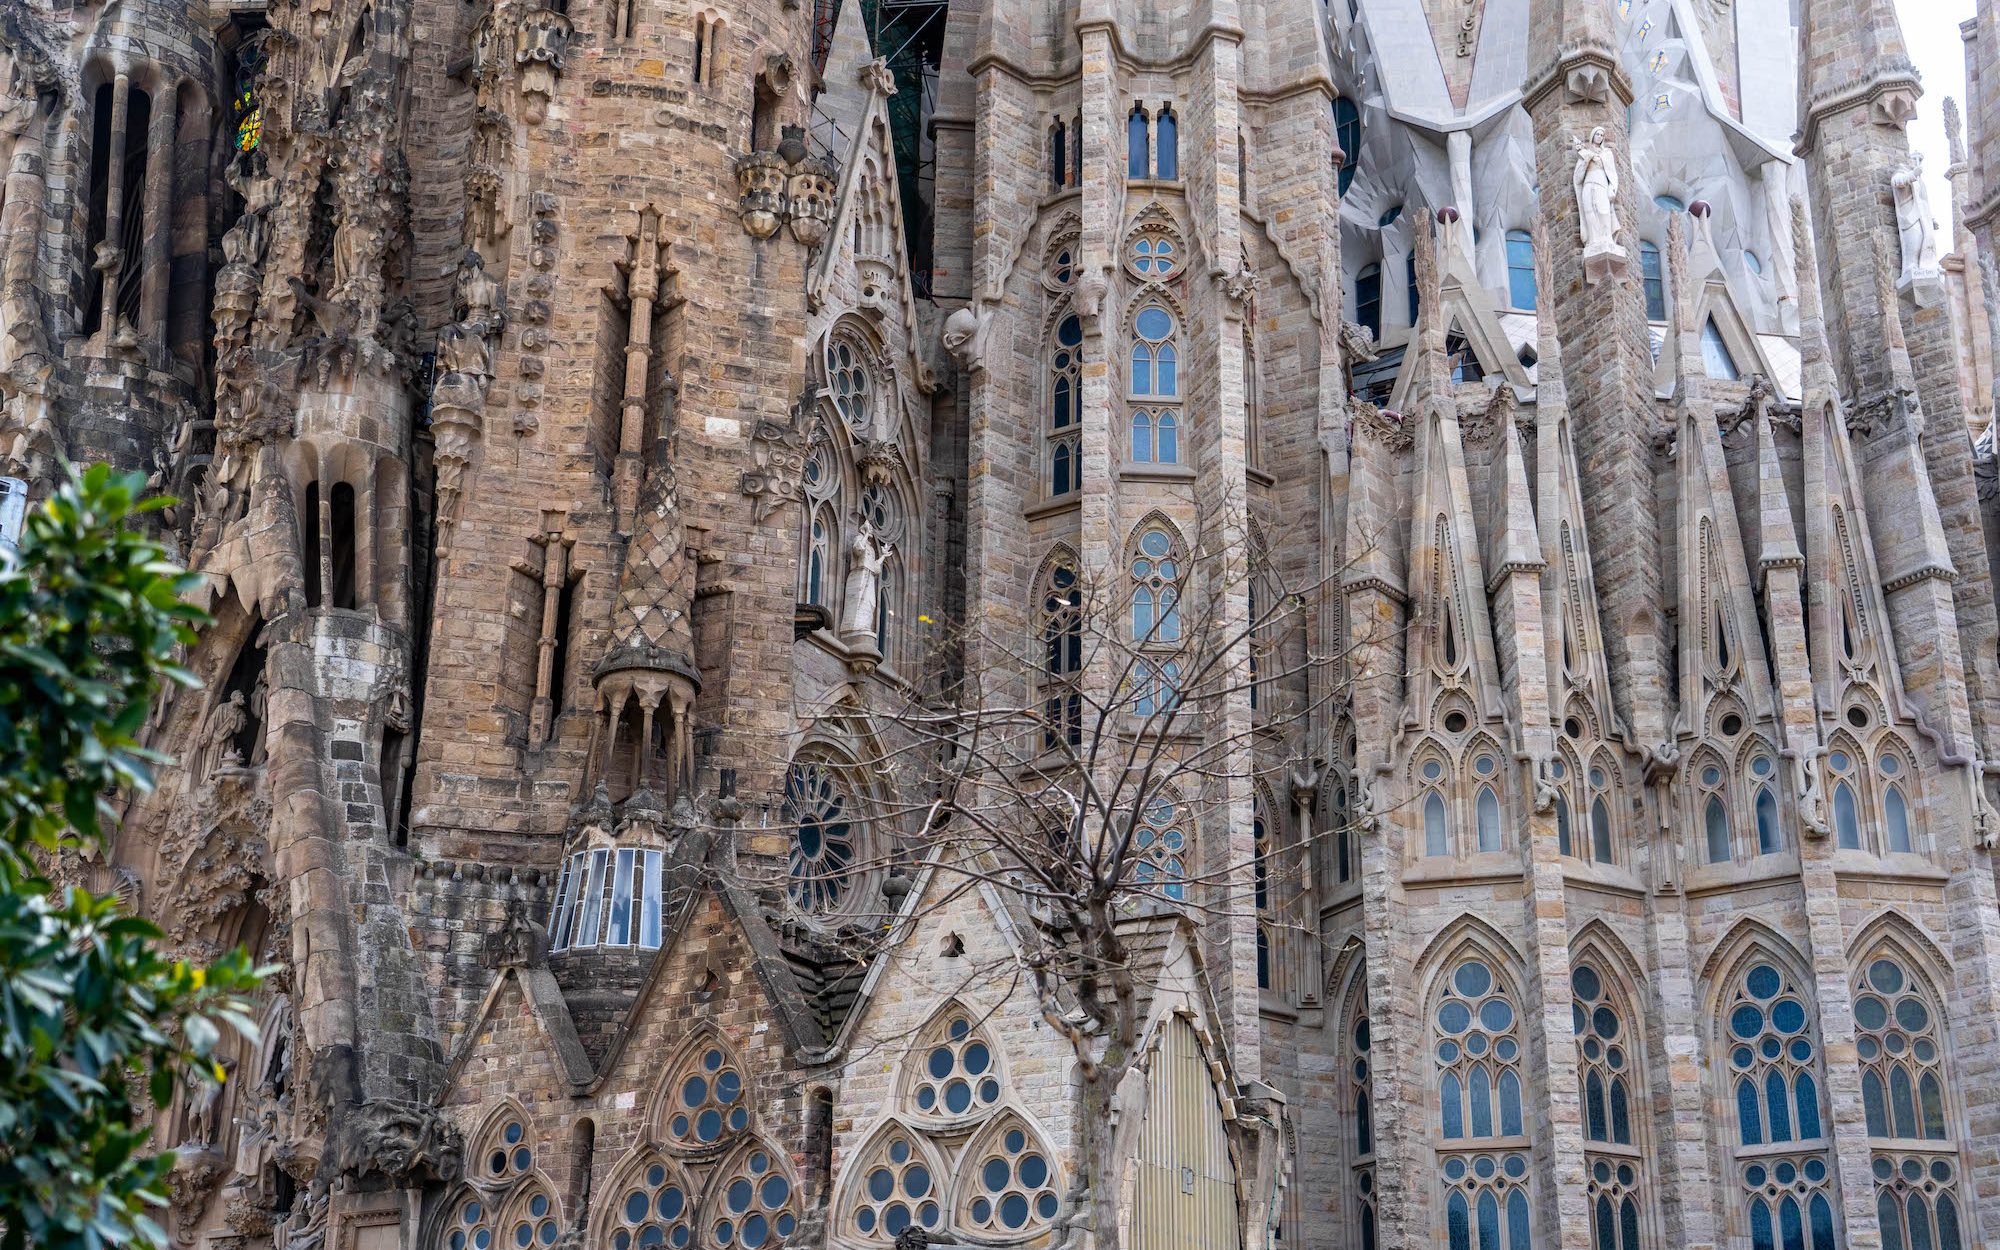 kunszt Gaudiego w Sagrada Familia - Barcelona atrakcje